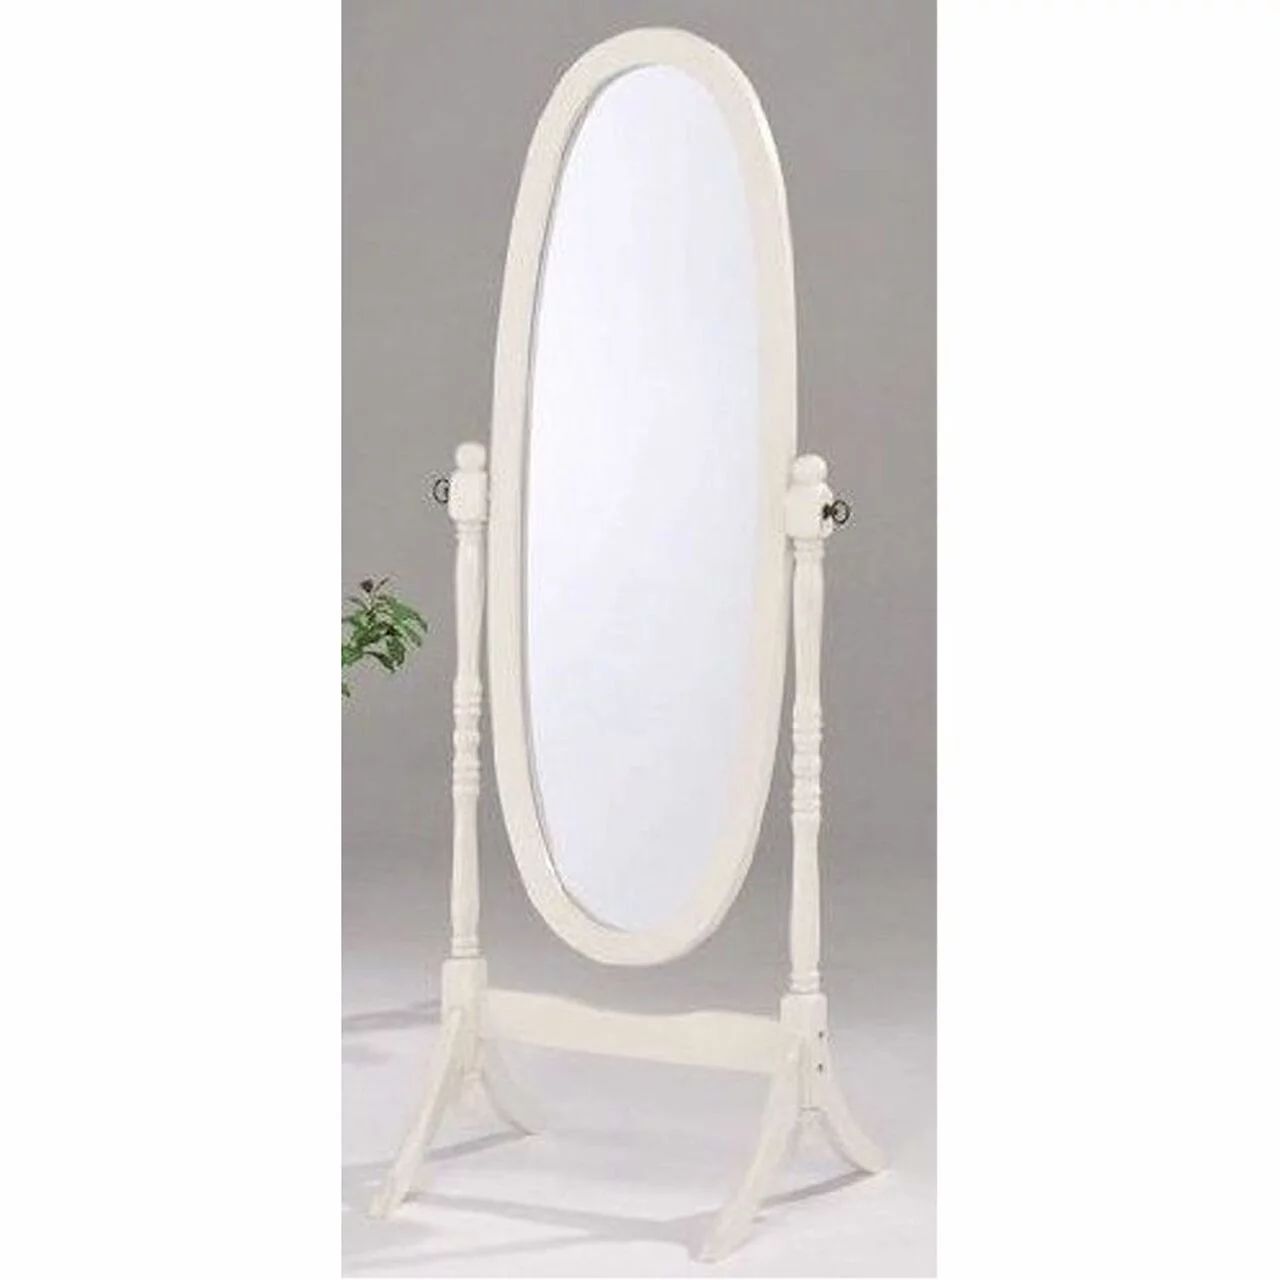 Swivel Full Length Wood Cheval Floor Mirror, White New | Walmart (US)